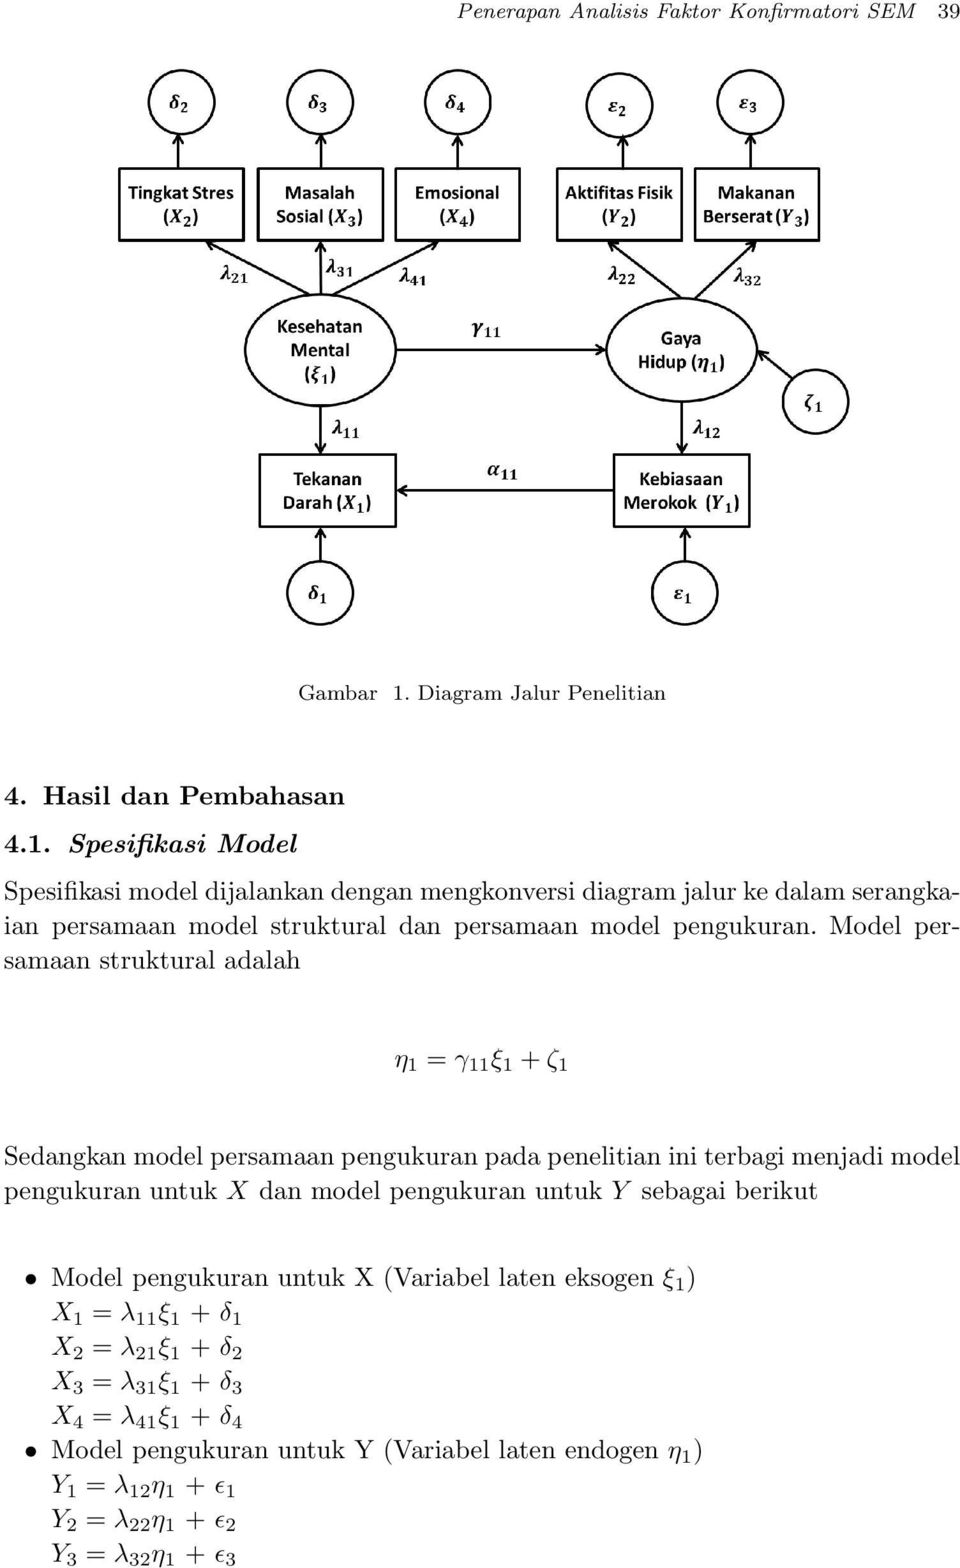 Spesifikasi Model Spesifikasi model dijalankan dengan mengkonversi diagram jalur ke dalam serangkaian persamaan model struktural dan persamaan model pengukuran.